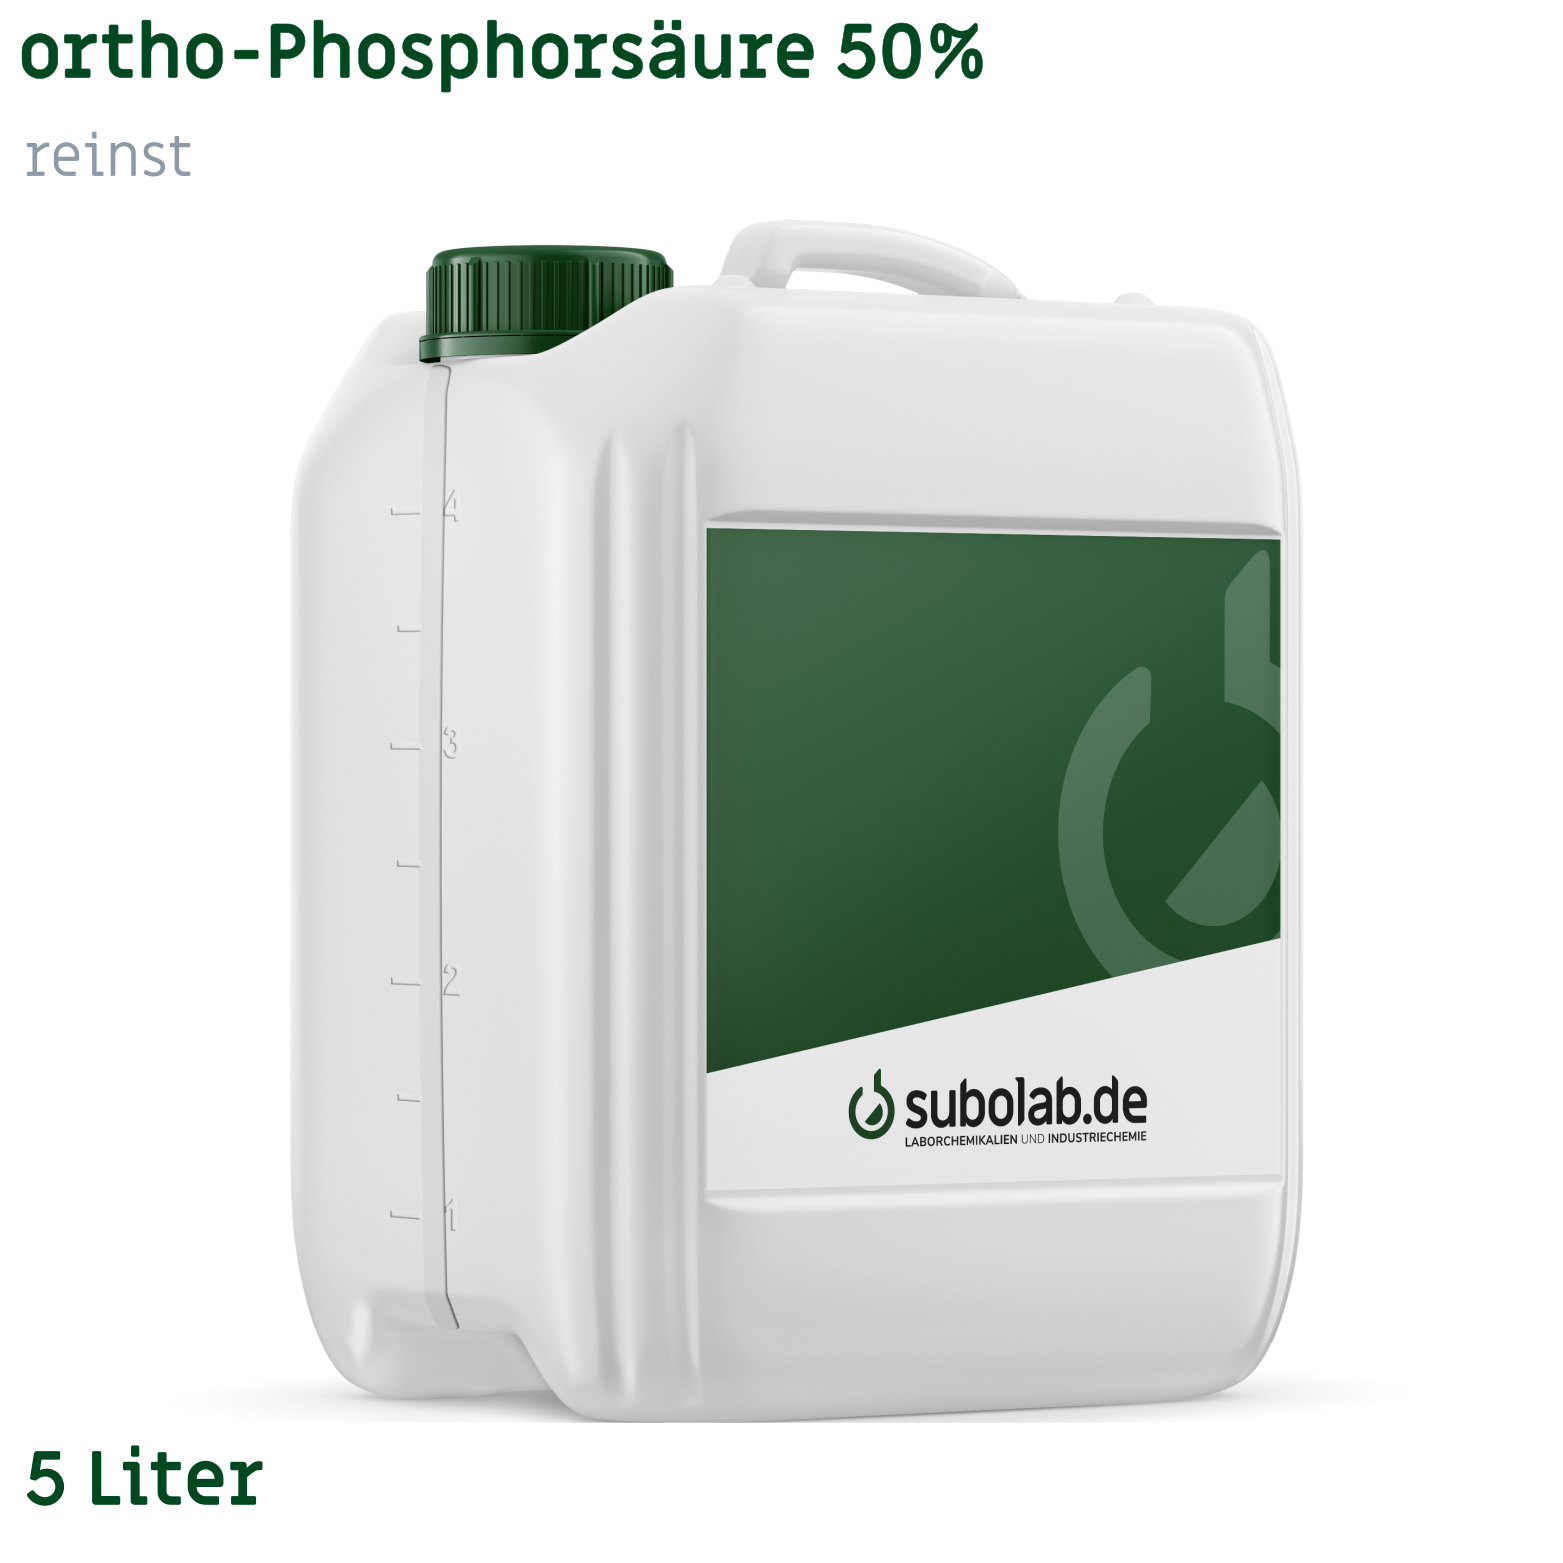 Bild von ortho-Phosphorsäure 50% reinst (5 Liter)